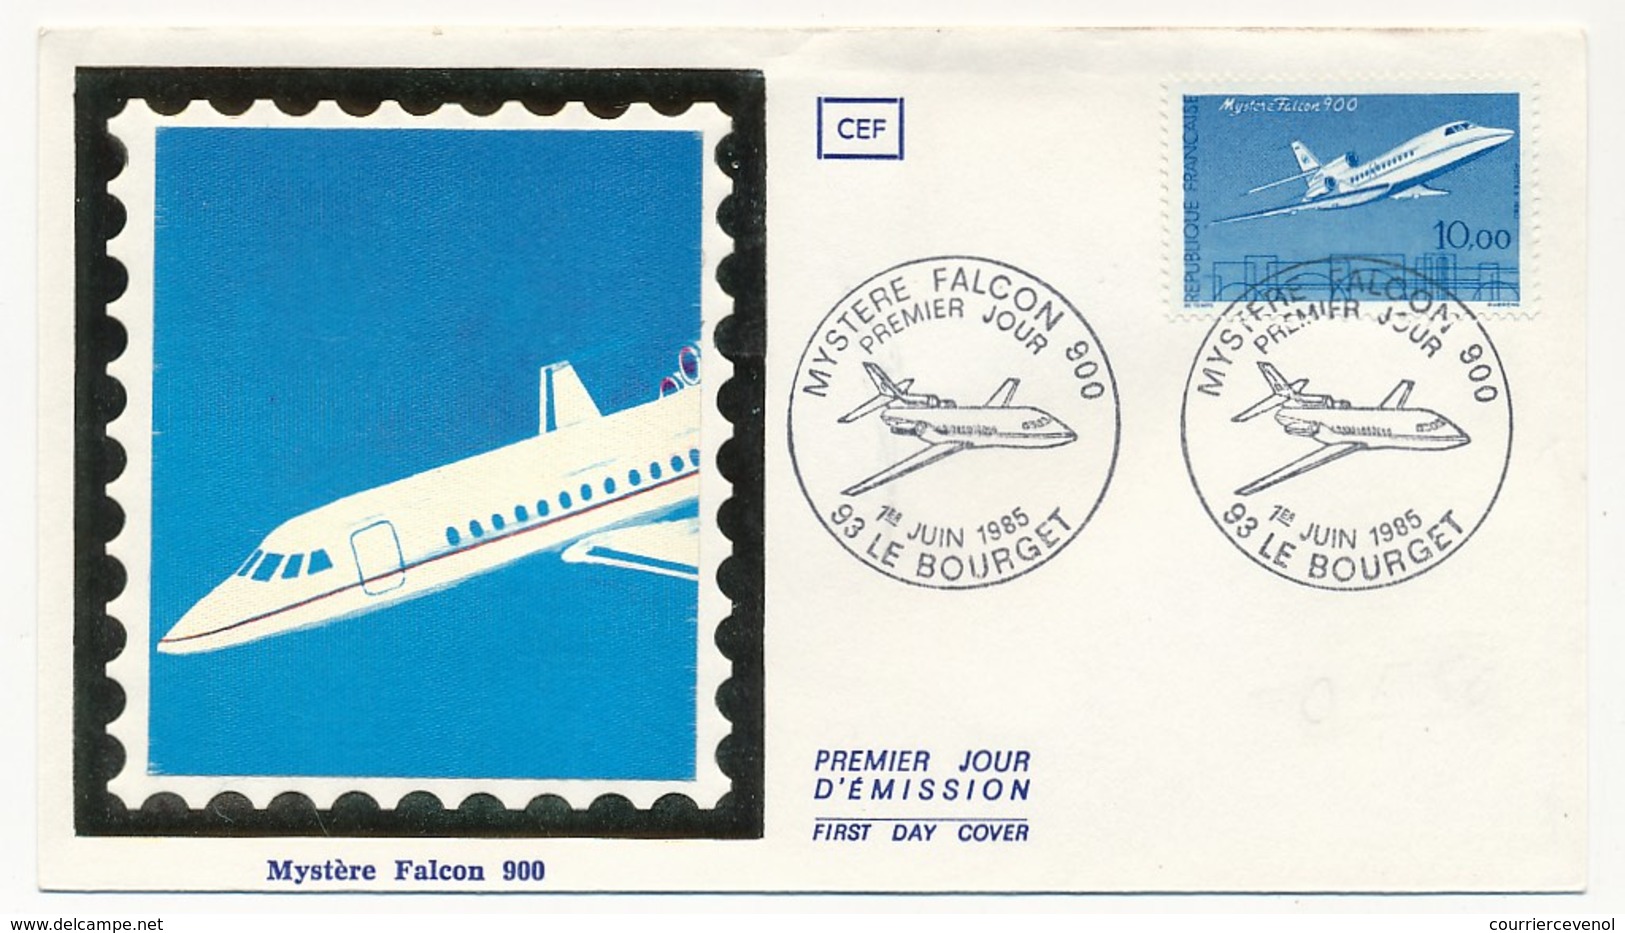 FRANCE - 2 Enveloppes FDC CEF Soie Et FDC - 10,00F Mystère FALCON 900 - Le Bourget 1er Juin 1985 - 1980-1989